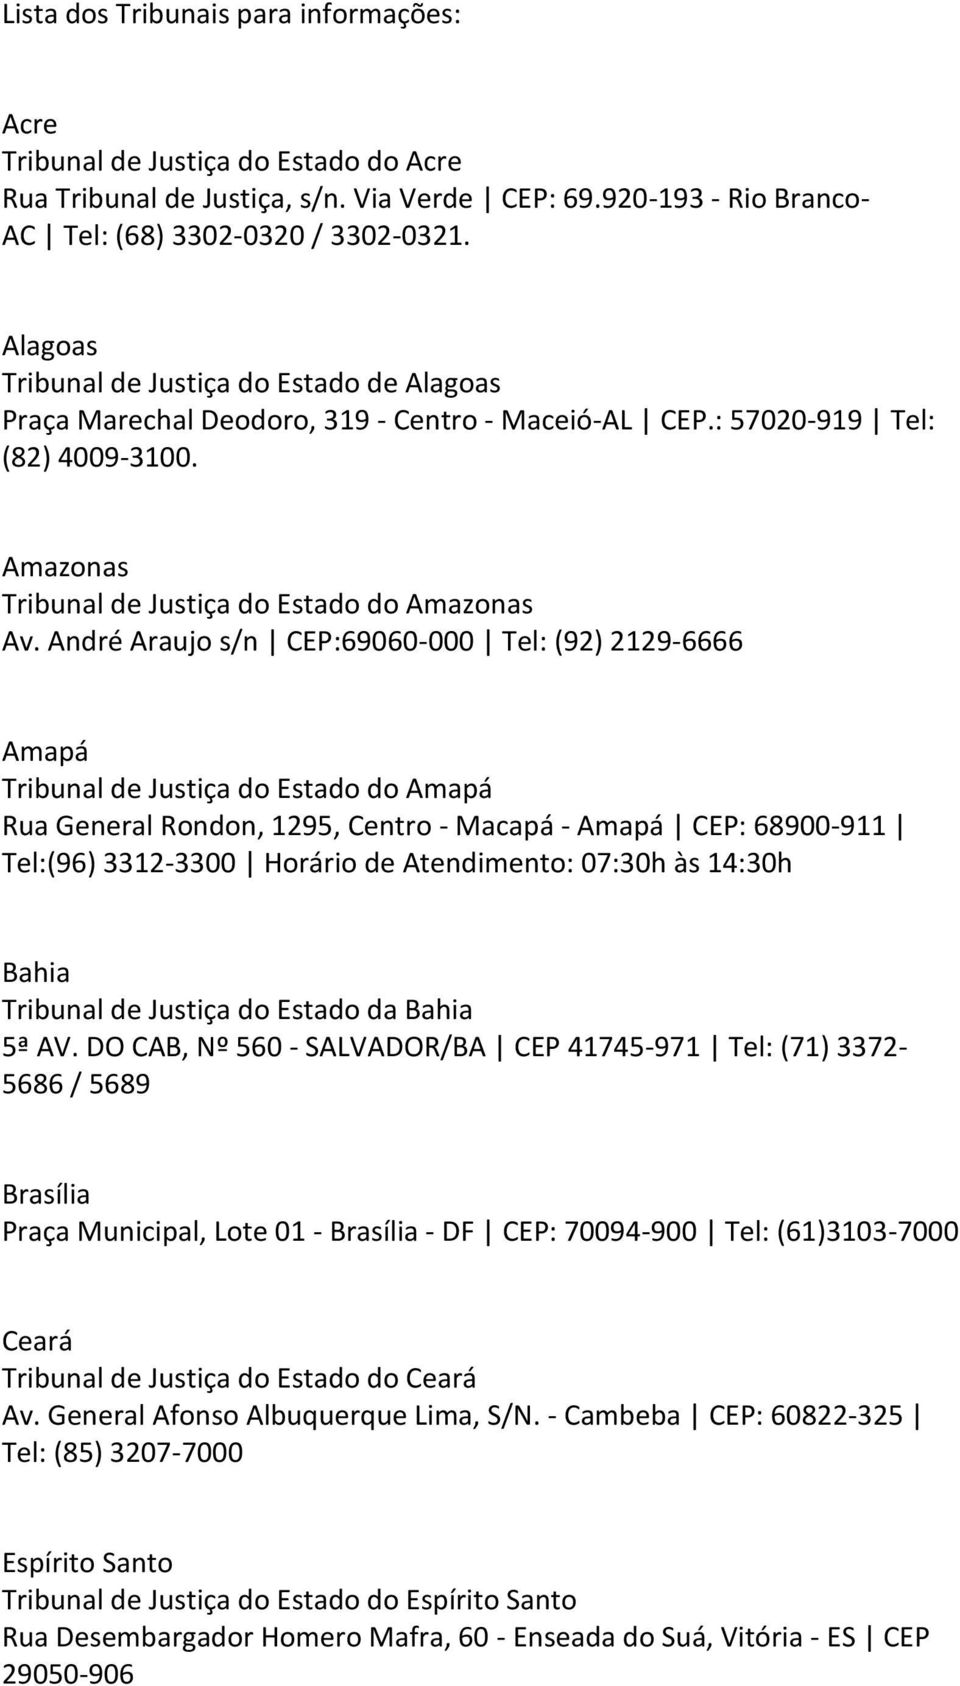 André Araujo s/n CEP:69060-000 Tel: (92) 2129-6666 Amapá Tribunal de Justiça do Estado do Amapá Rua General Rondon, 1295, Centro - Macapá - Amapá CEP: 68900-911 Tel:(96) 3312-3300 Horário de